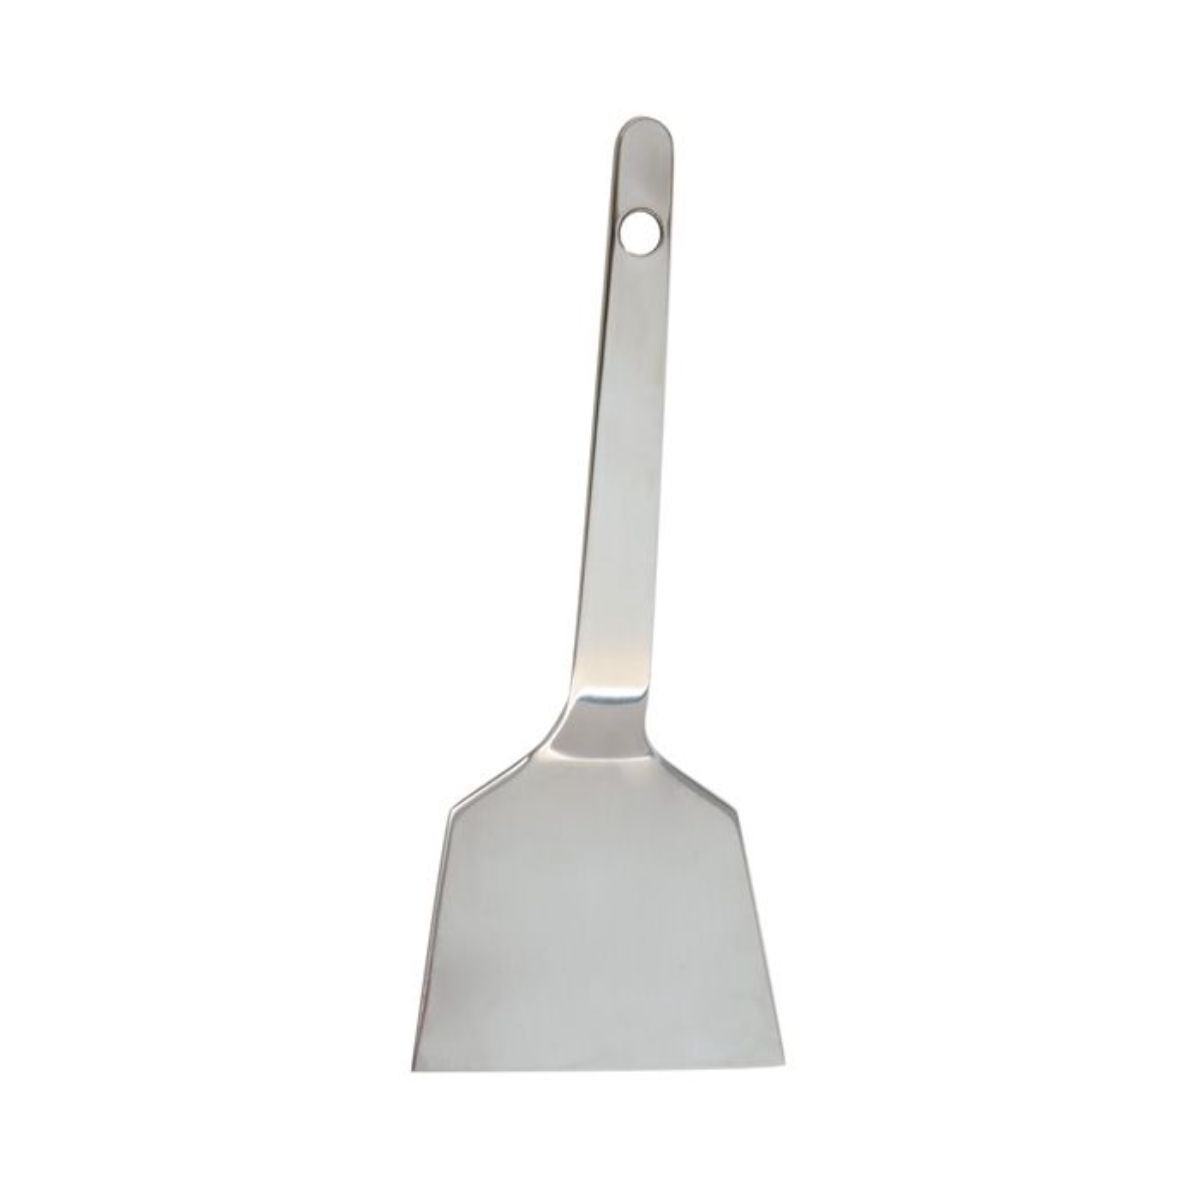 9.75 Offset spatula white 1369 - eCakeSupply - eCakeSupply